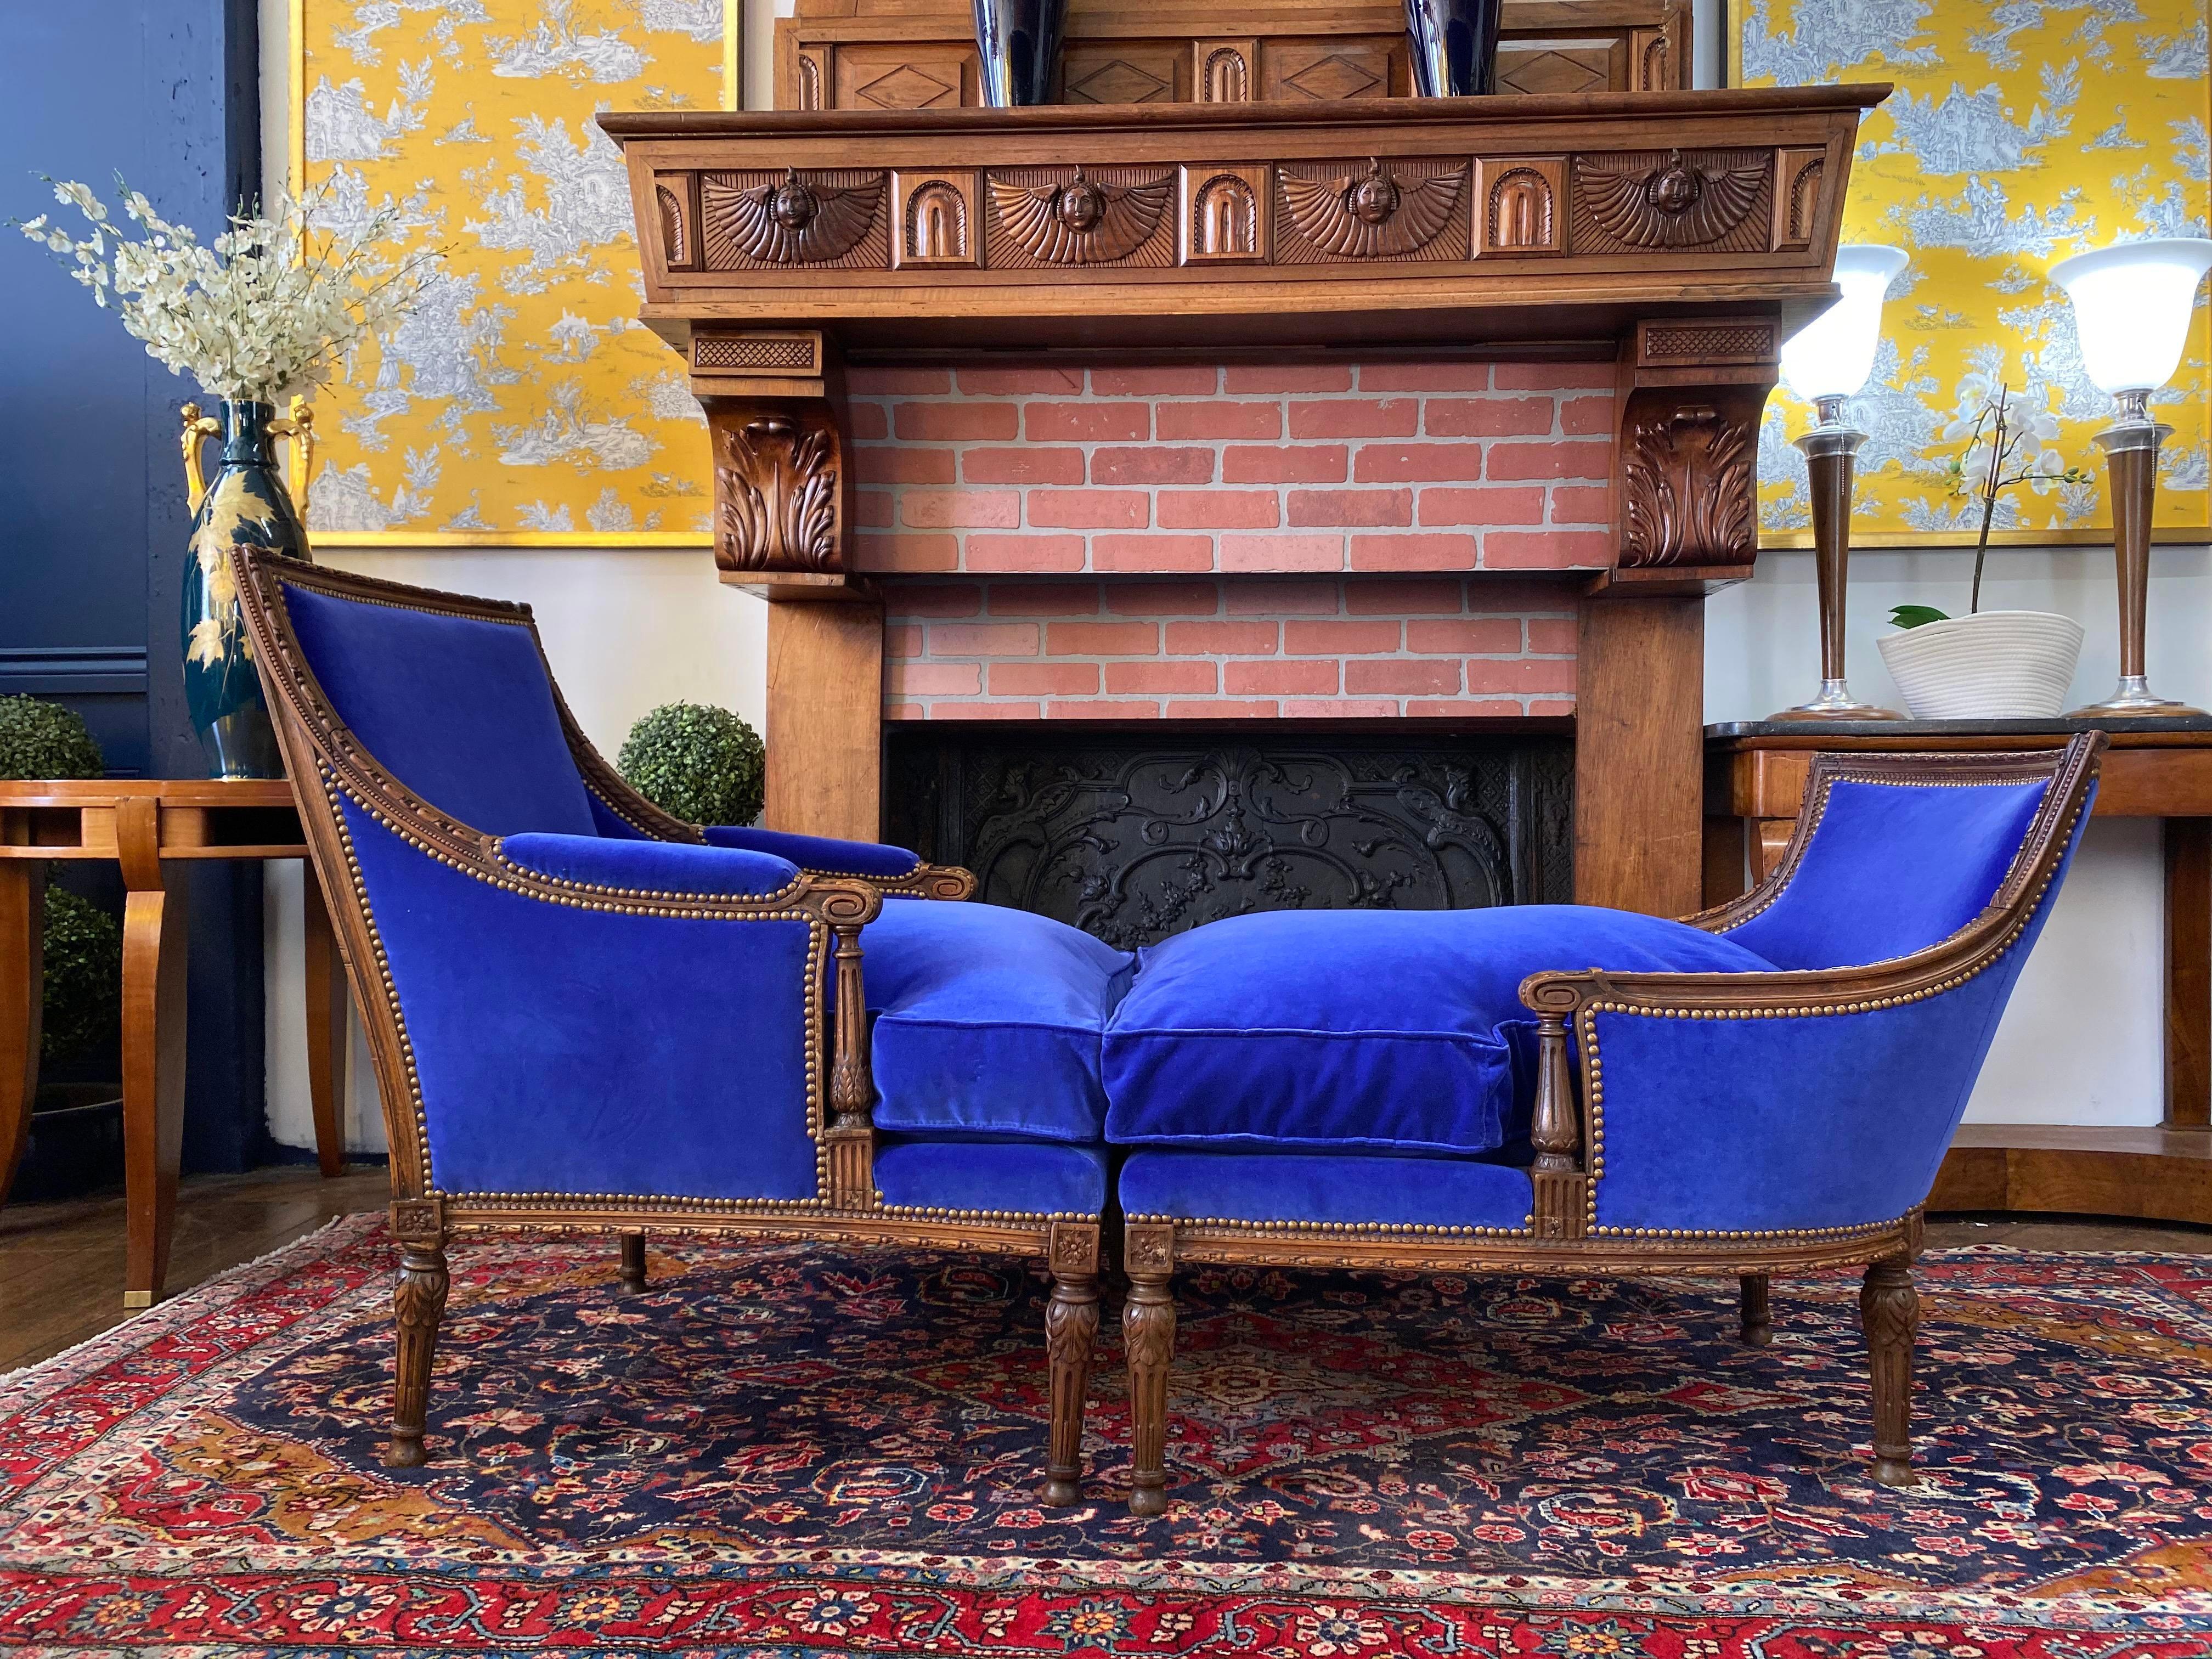 Äußerst seltener französischer Louis XVI Duchesse Brisee (Chaise Longue oder Sessel) von Nicolas-Jean Marchand, ca. 1730er Jahre. Wunderschönes handgeschnitztes Eichenholz, neu restauriert und mit blauem Casamance-Samtstoff bezogen. Beide Stühle